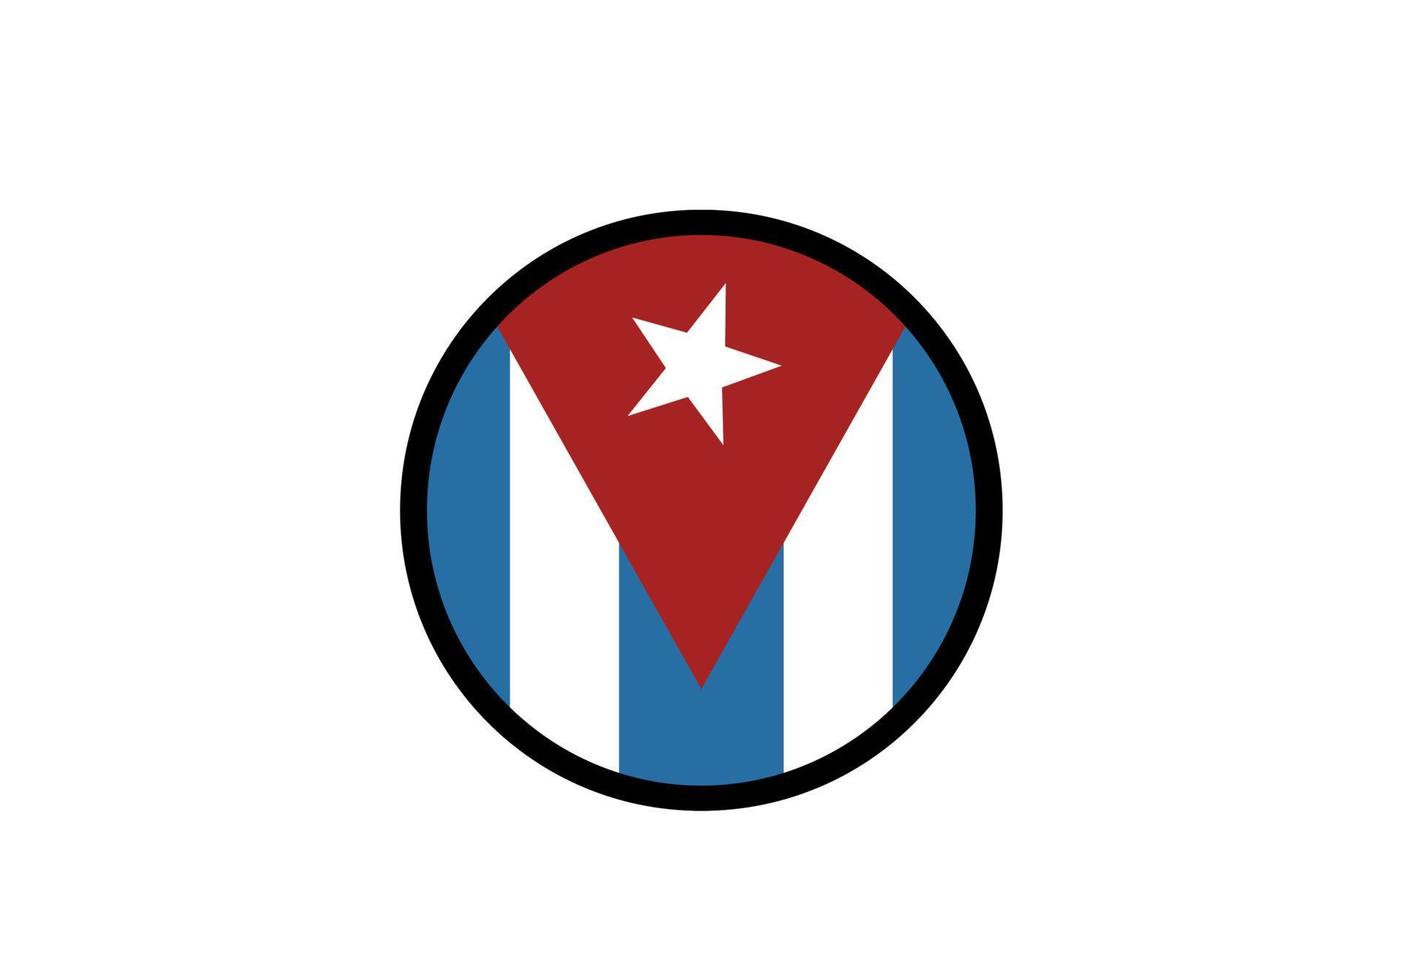 Cuba drapeau icône, illustration de nationale drapeau conception avec élégance concept vecteur